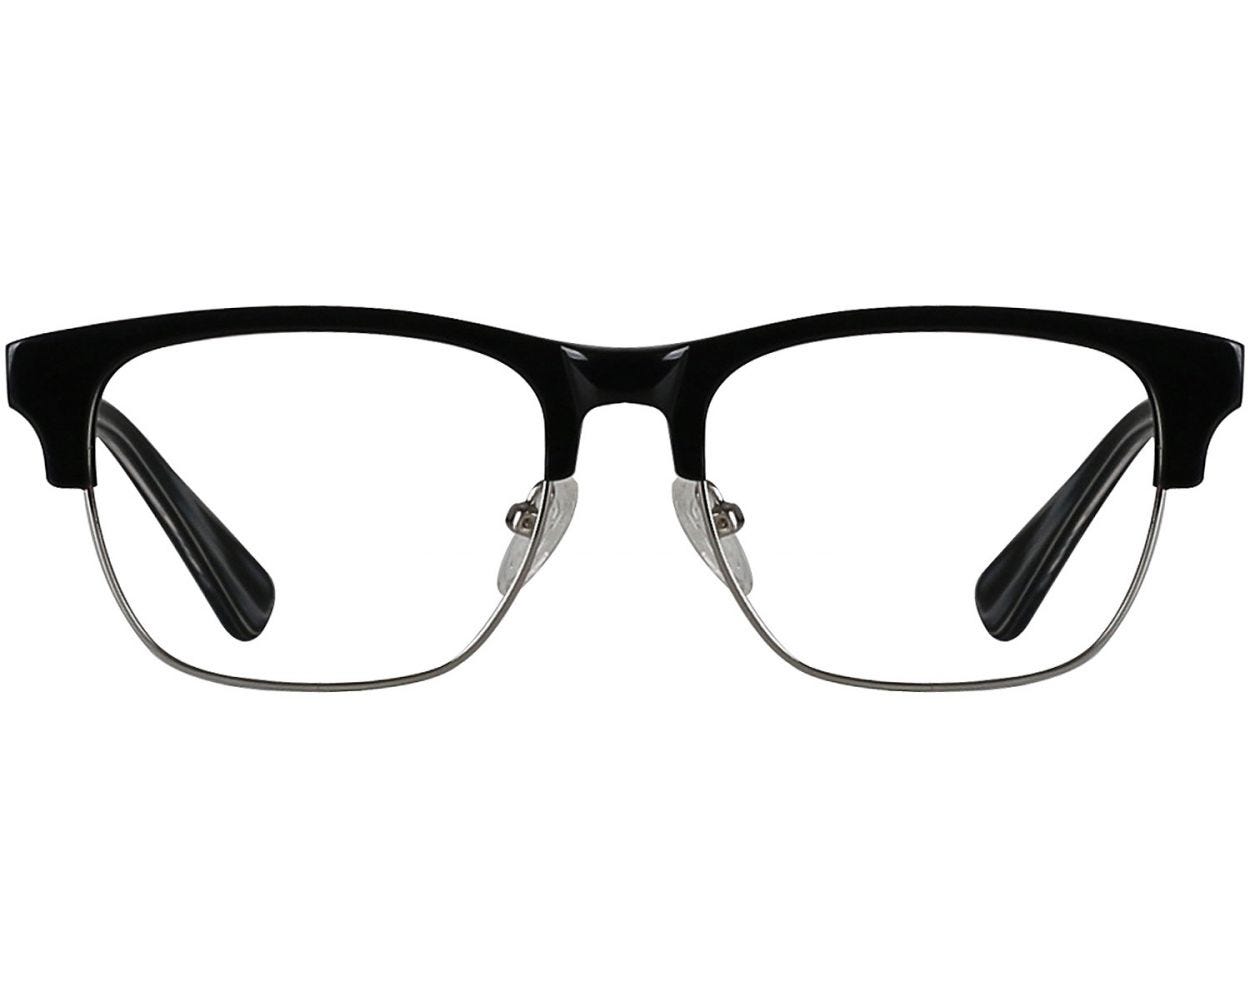 Browline Eyeglasses 141397 C